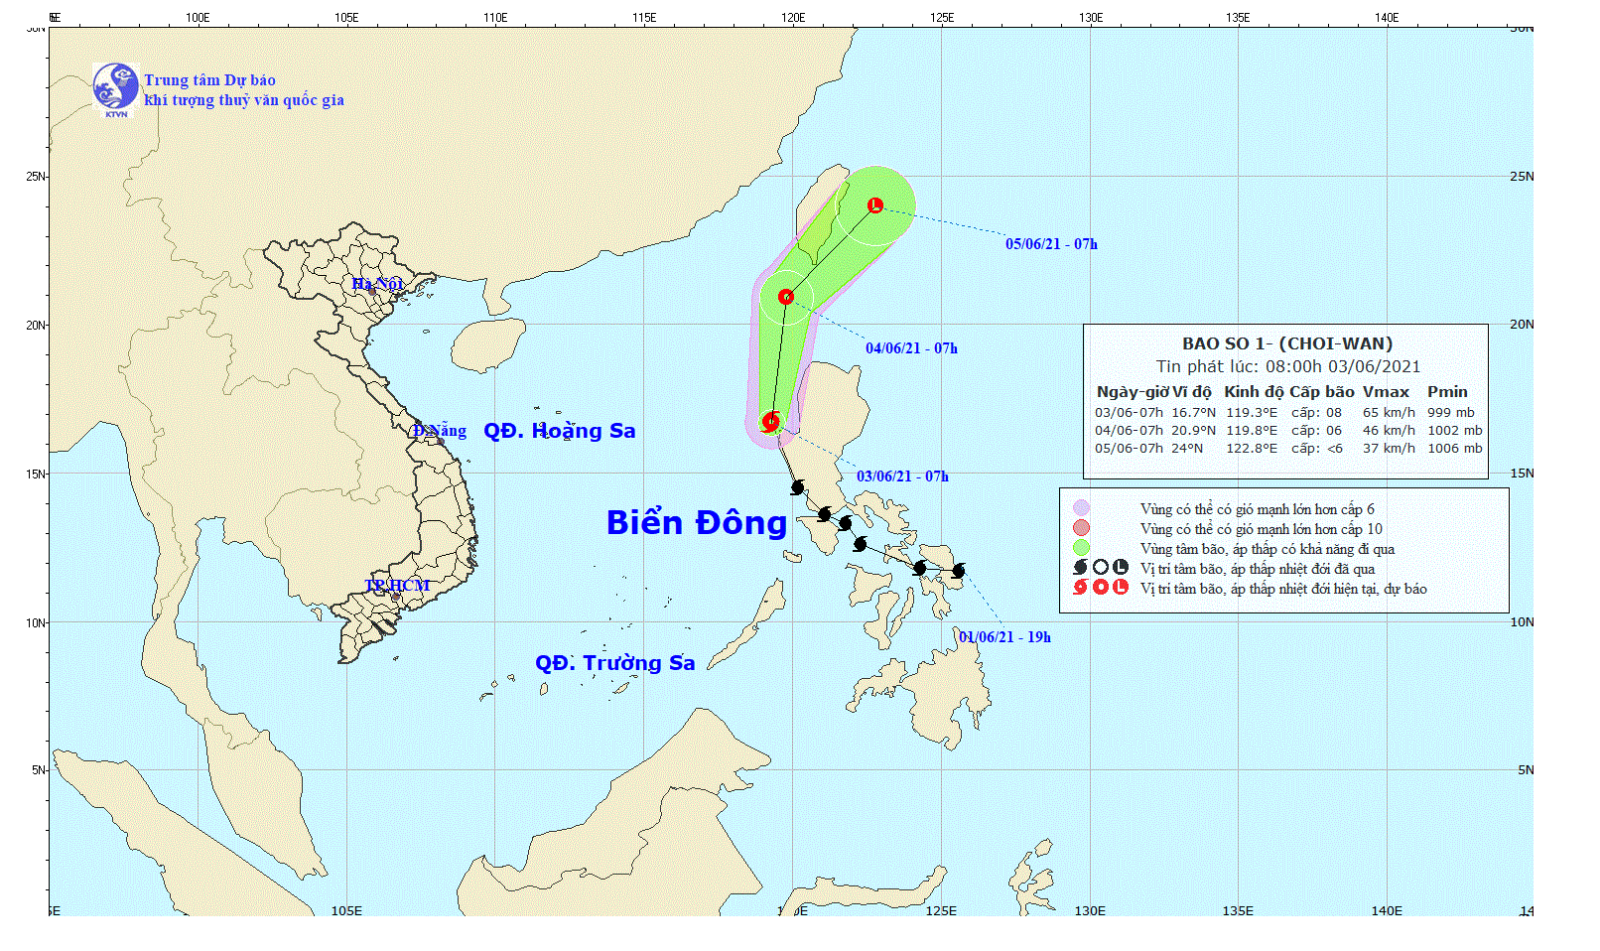 Bão Choi-Wan trở thành cơn bão số 1 trên Biển Đông năm 2021 - Ảnh 1.